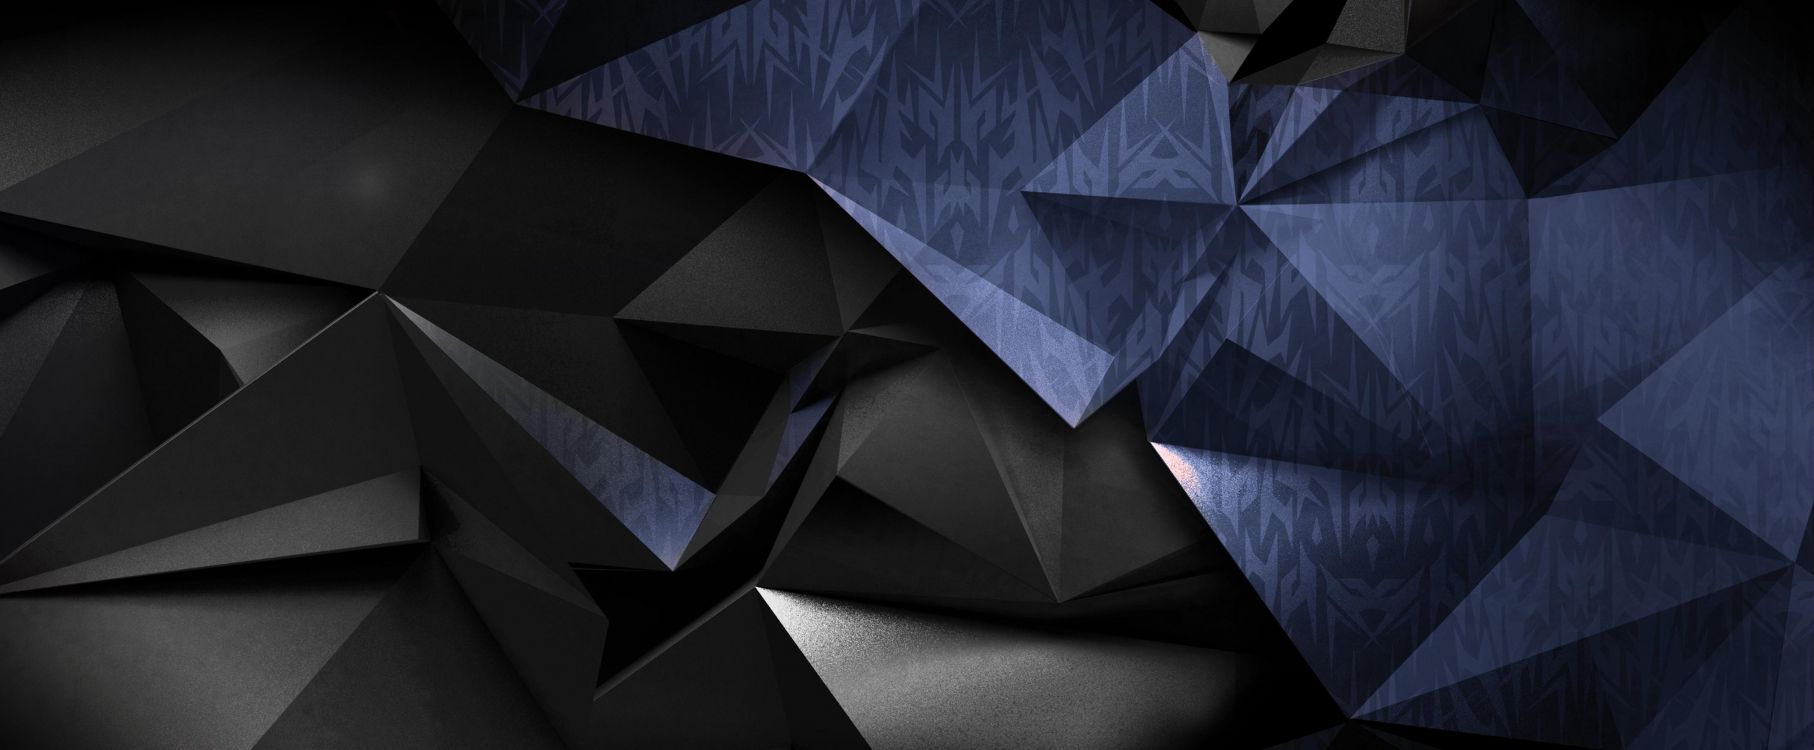 宏碁, 黑色的, 三角形, 黑色和白色的, 宏碁渴望 壁纸 5064x2093 允许